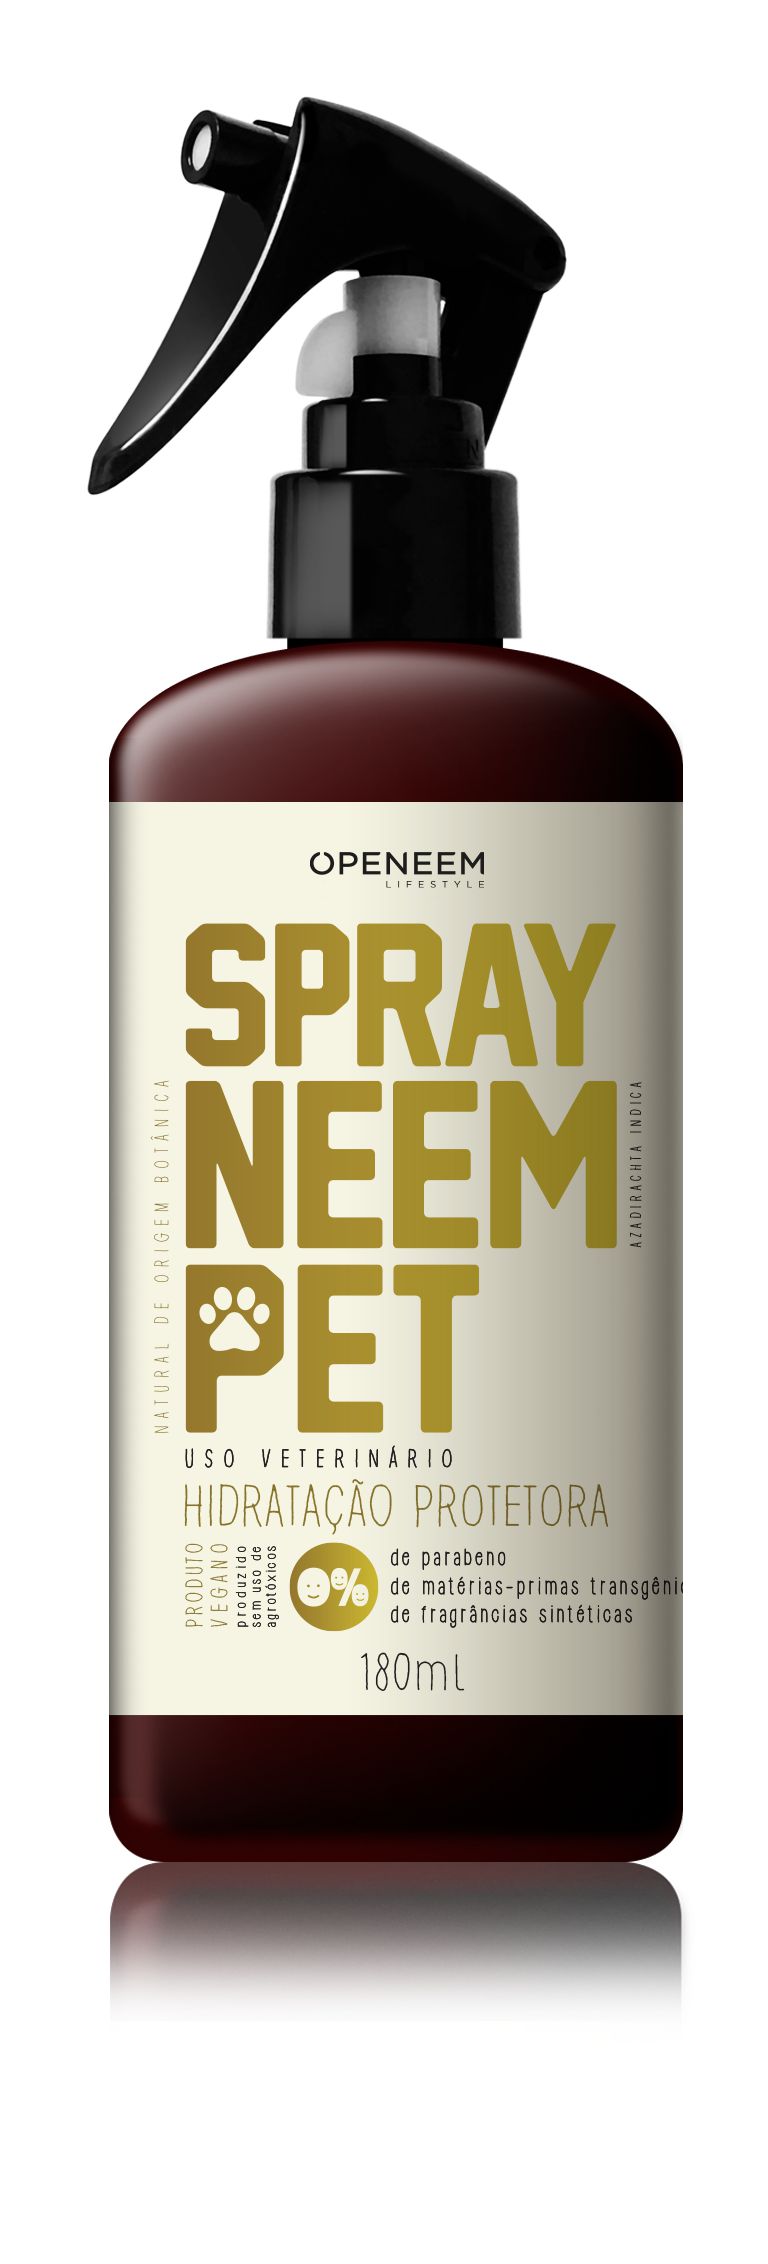 Spray Neem Pet - Repelente Natural de Neem - Preserva Mundi - Zen Animal -  Produtos Naturais e Especiais para Cães e Gatos.